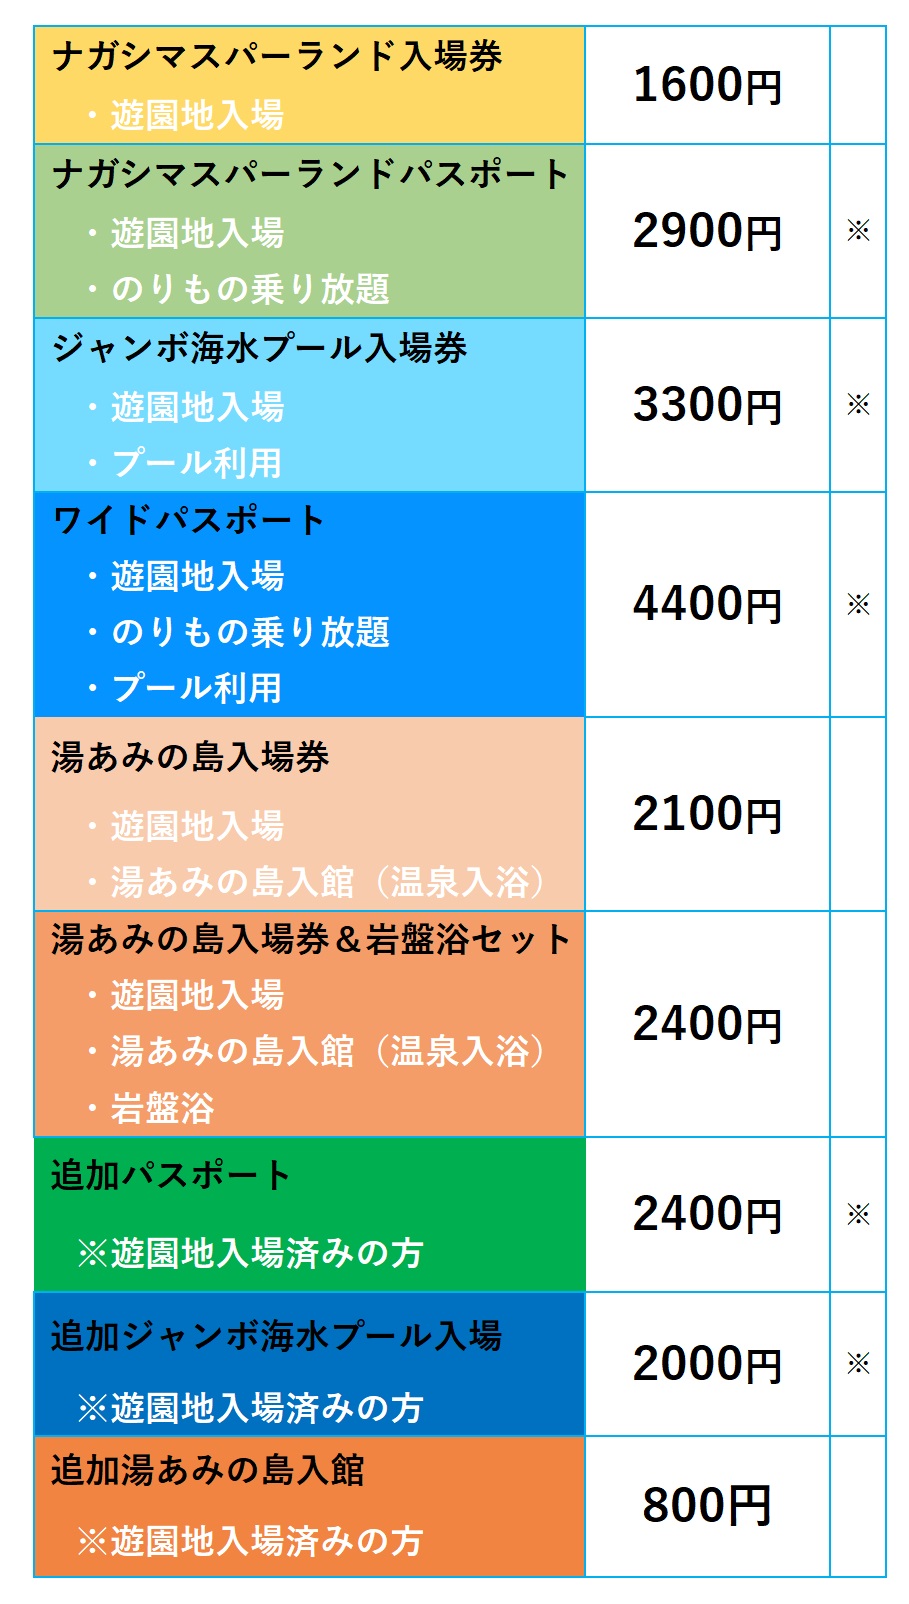 7,050円ナガシマスパーランドチケット